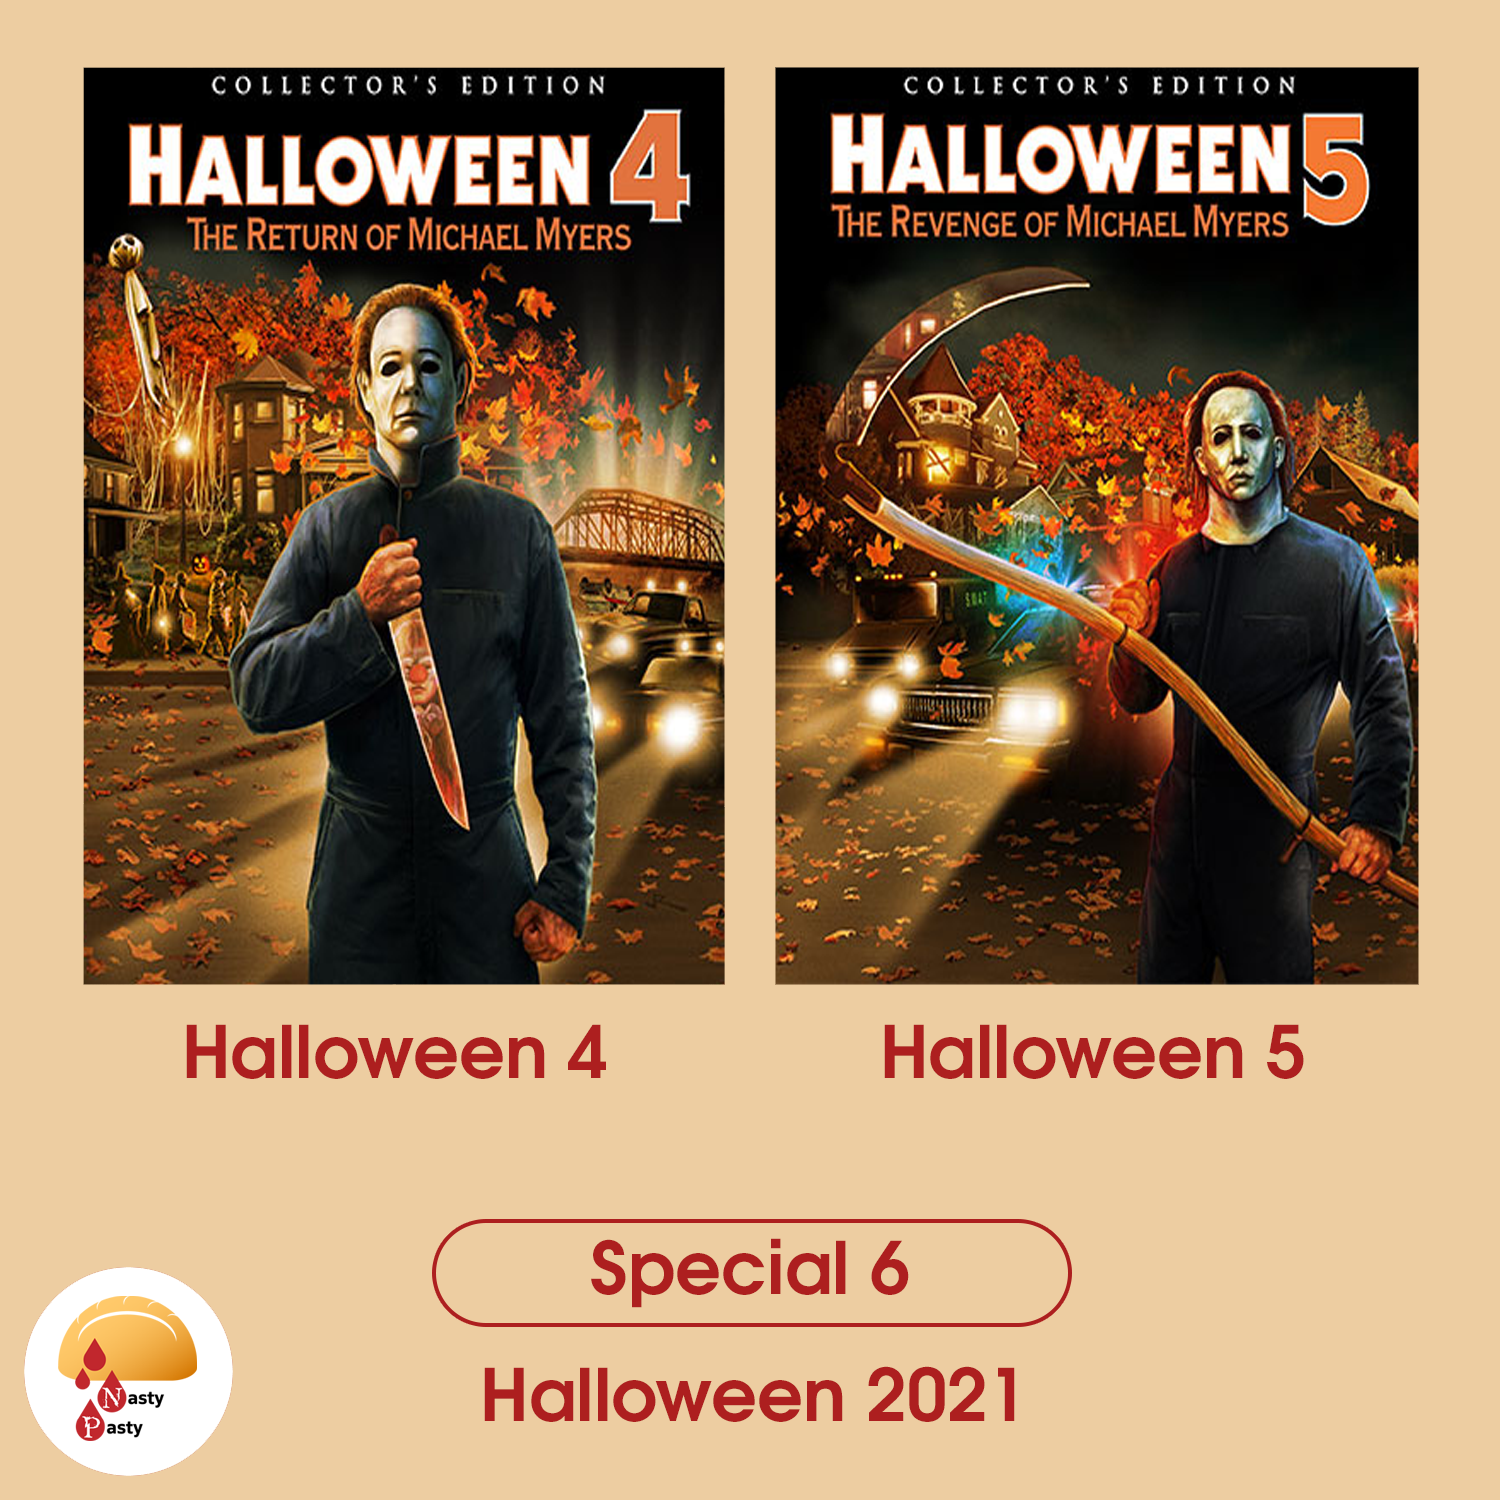 Special 6: Halloween 2021